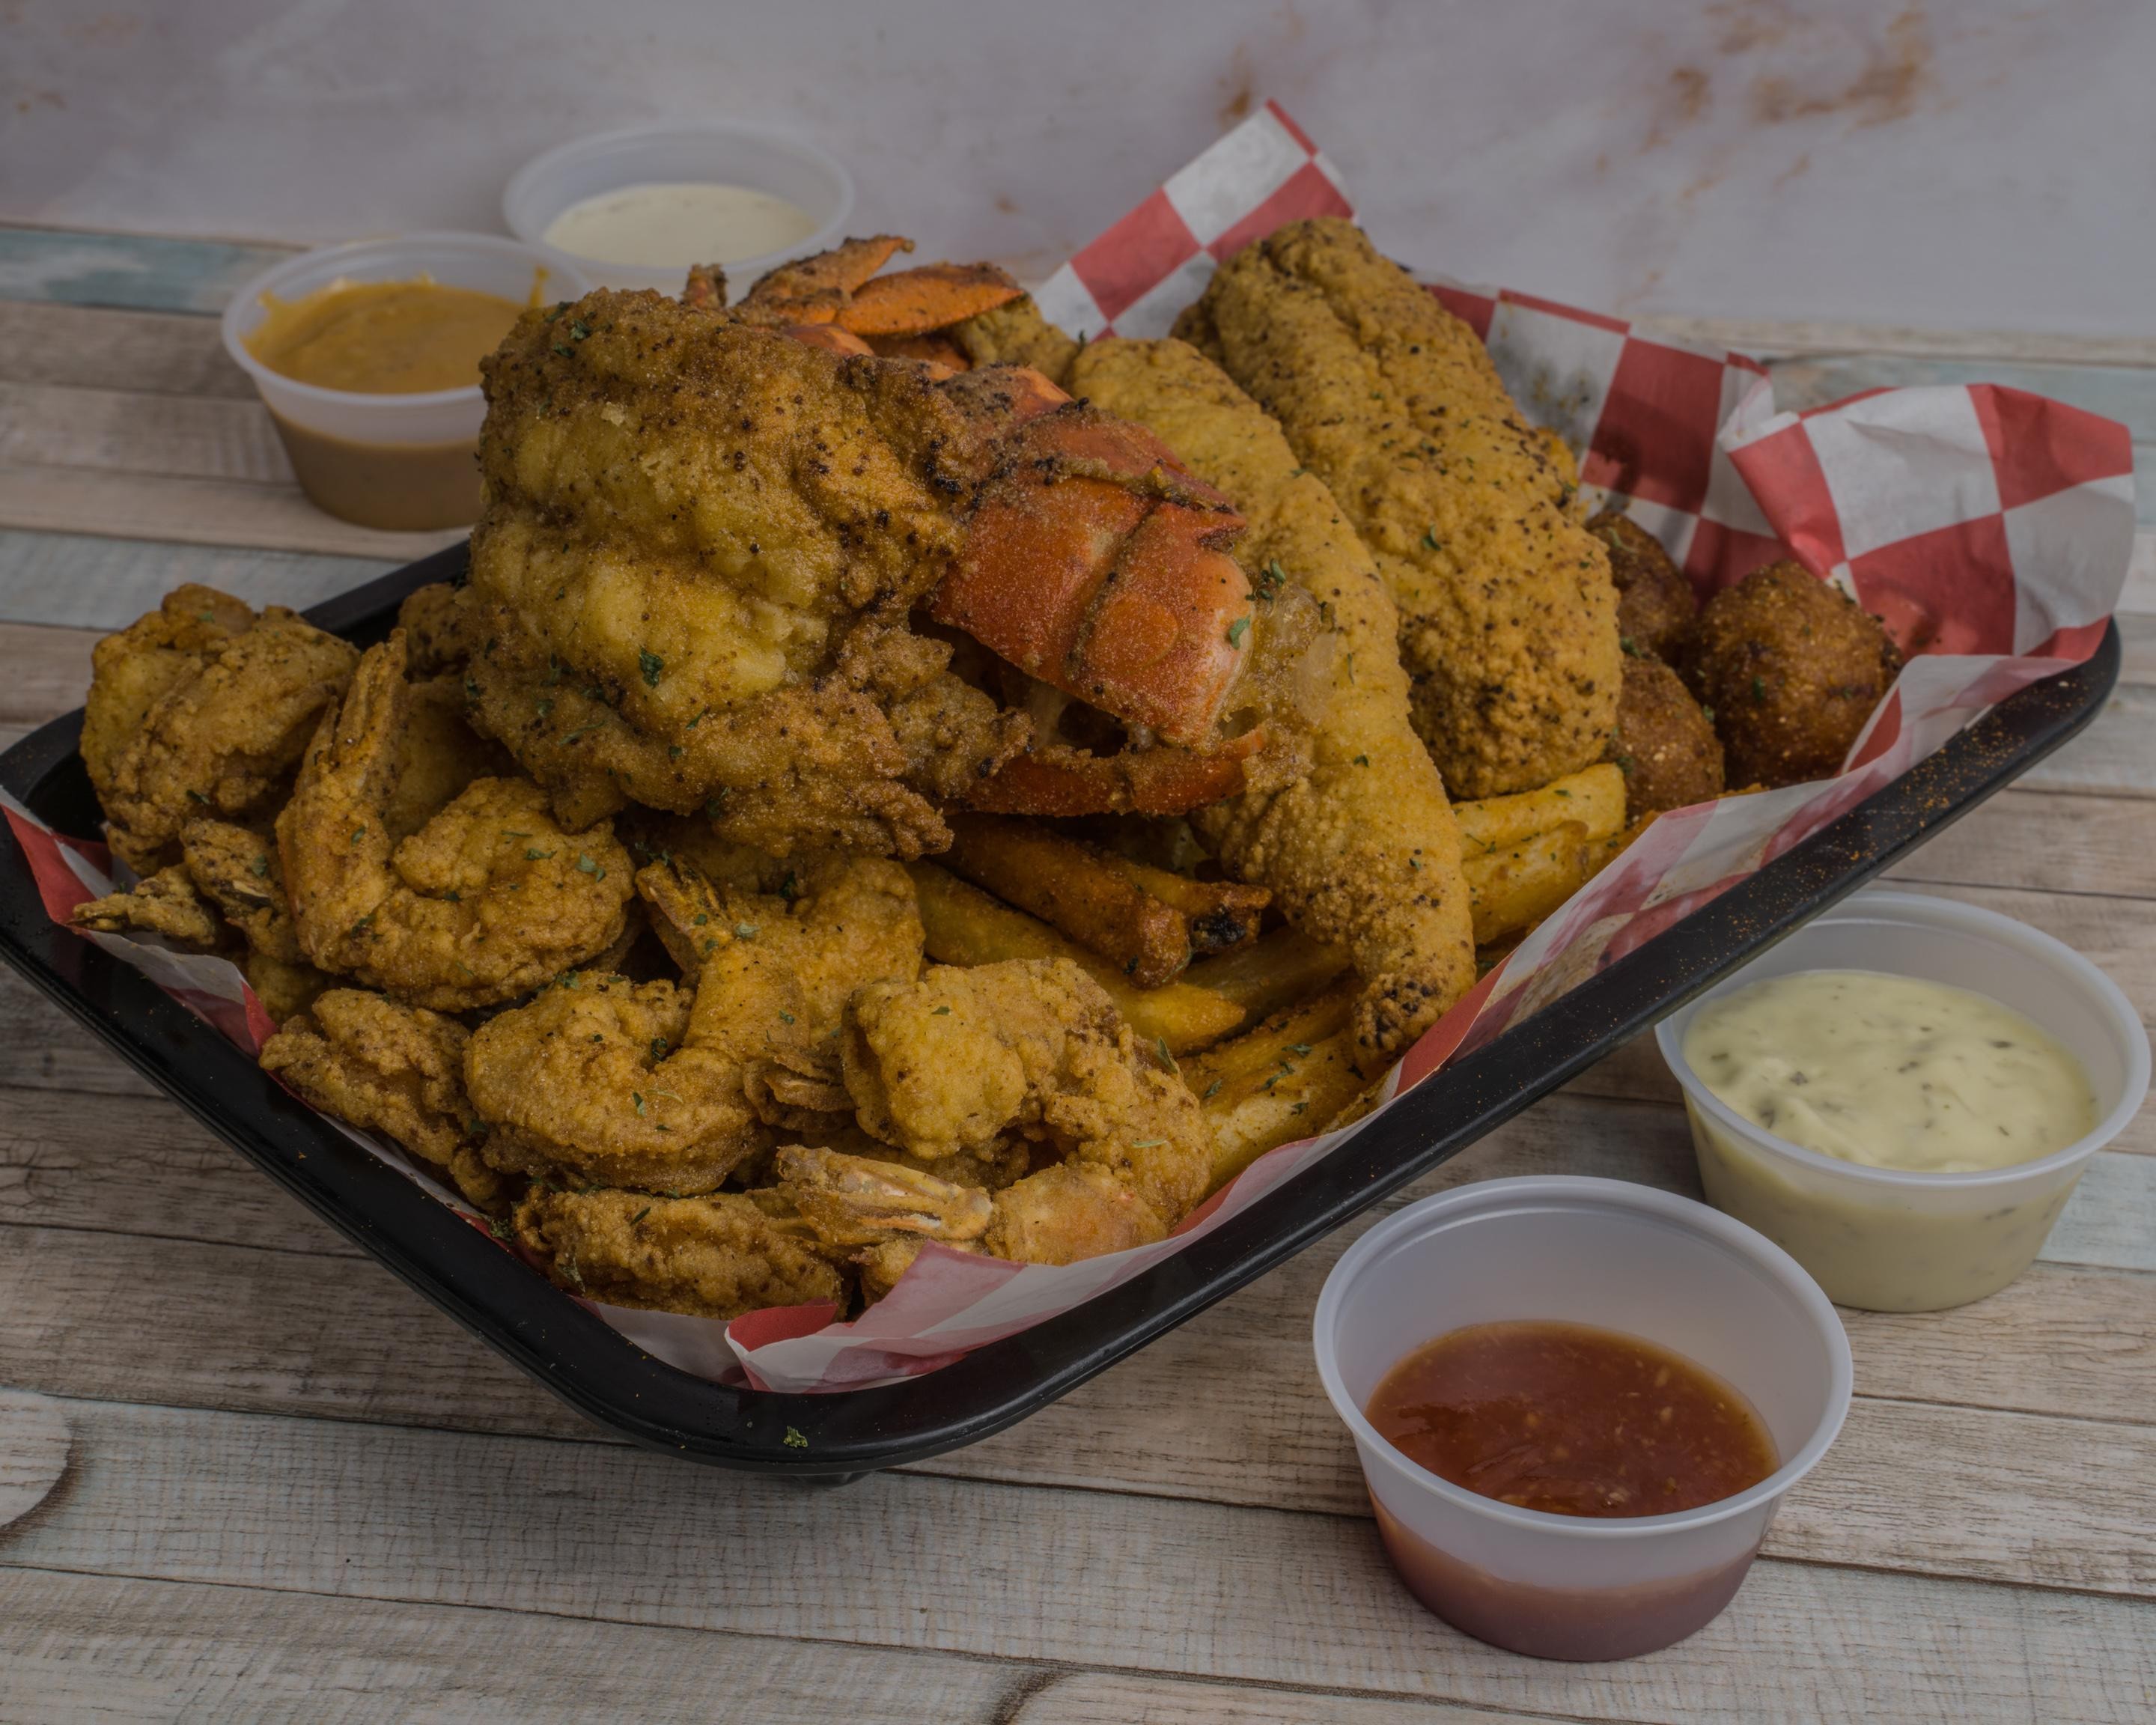 #10 Lobster, Fish & Shrimp Platter